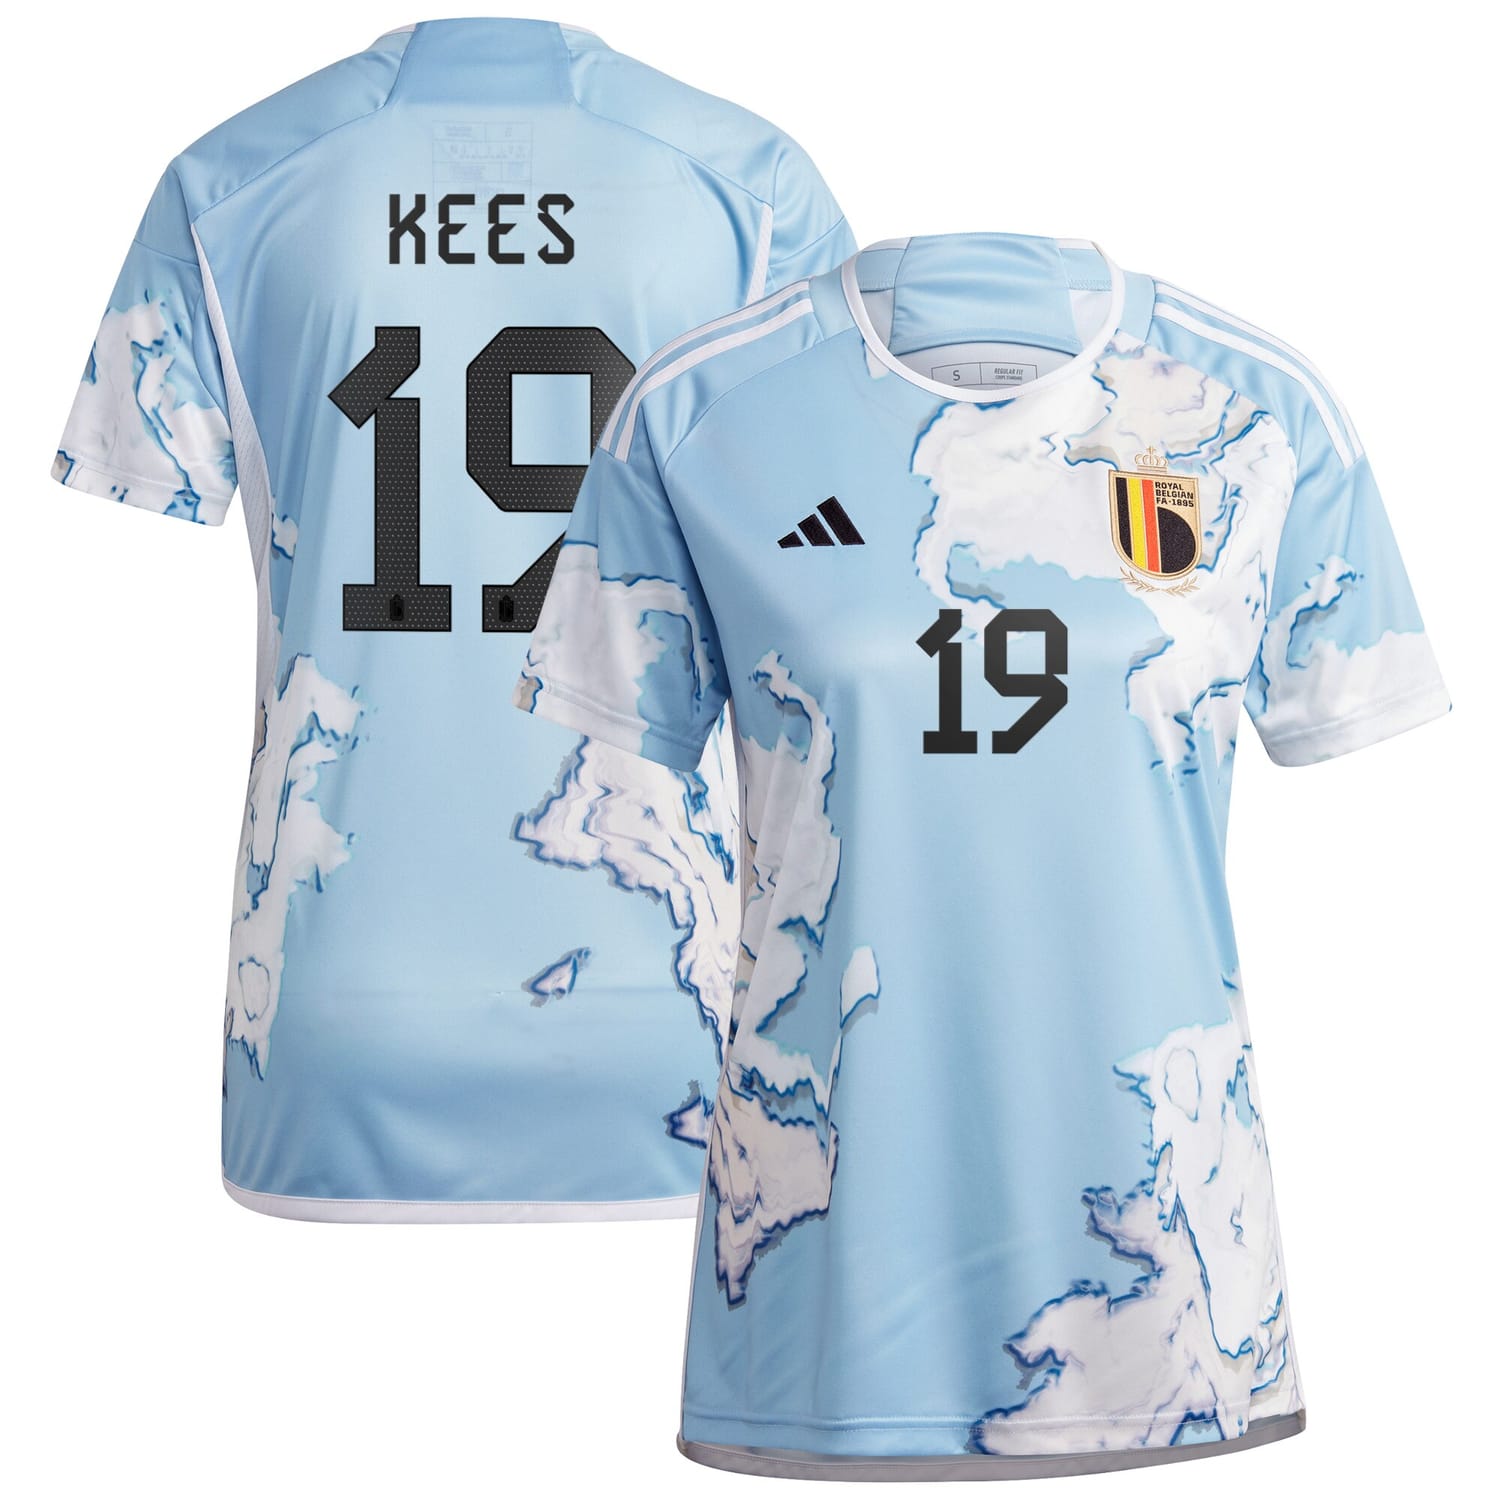 Belgium National Team Away Jersey Shirt 2023 player Sari Kees 19 printing for Women